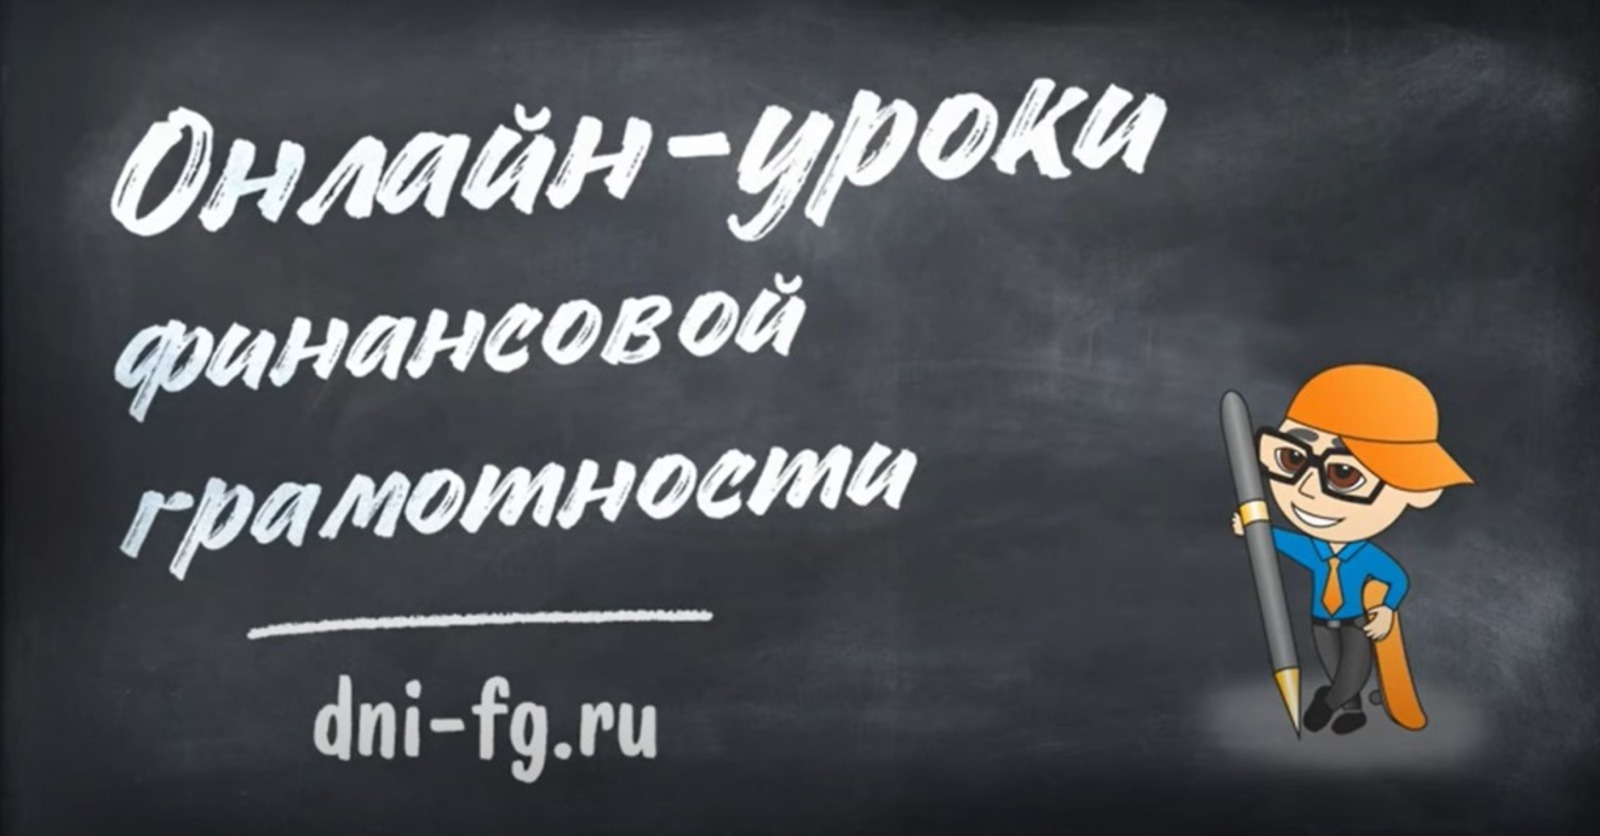 В России стартовали онлайн-уроки финансовой грамотности для школьников и студентов